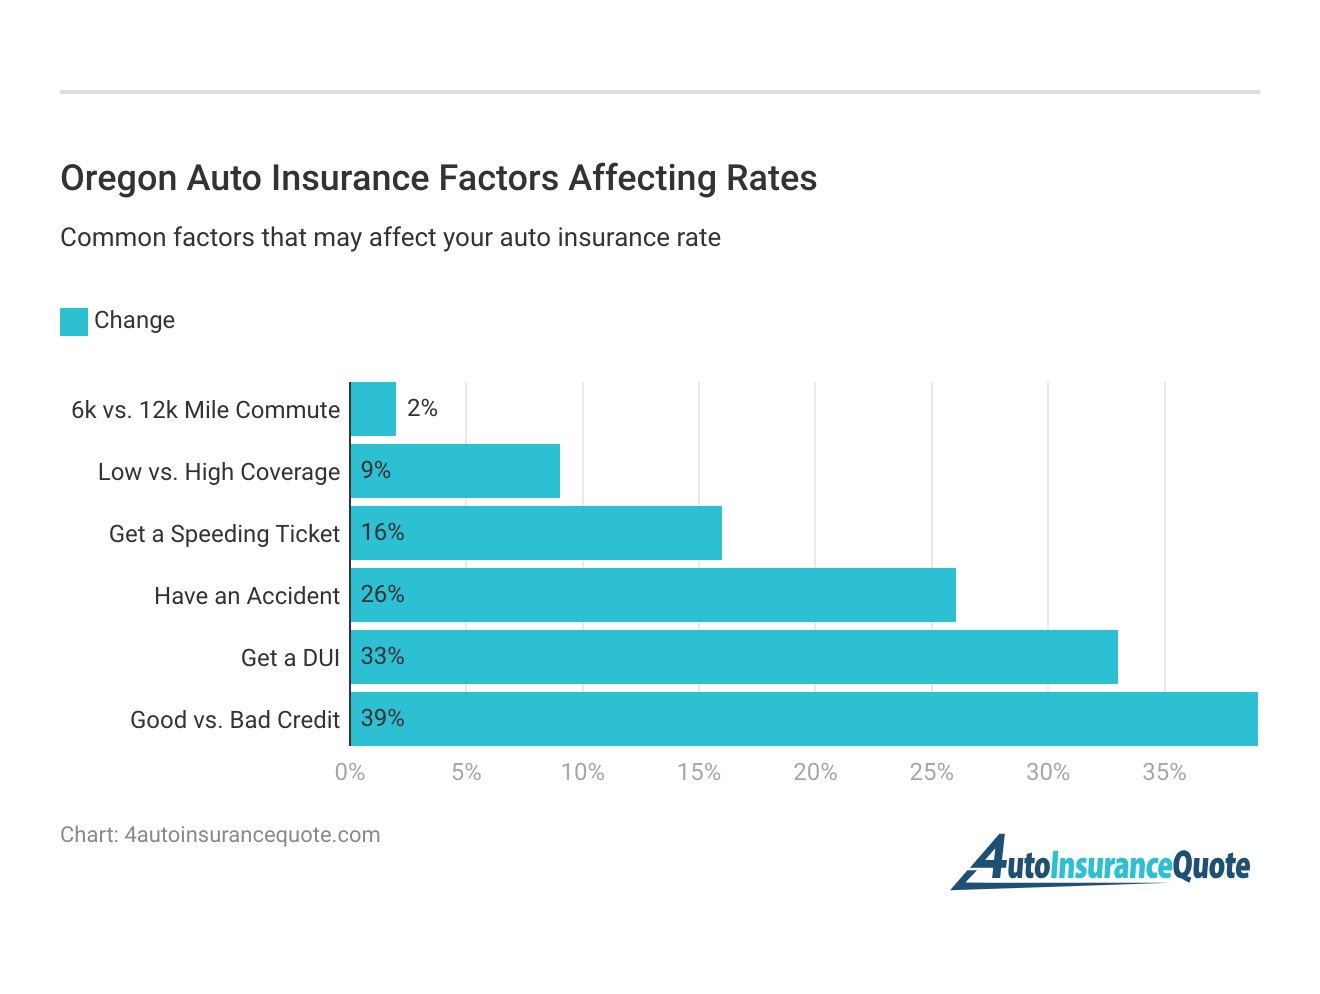 <h3>Oregon Auto Insurance Factors Affecting Rates</h3>